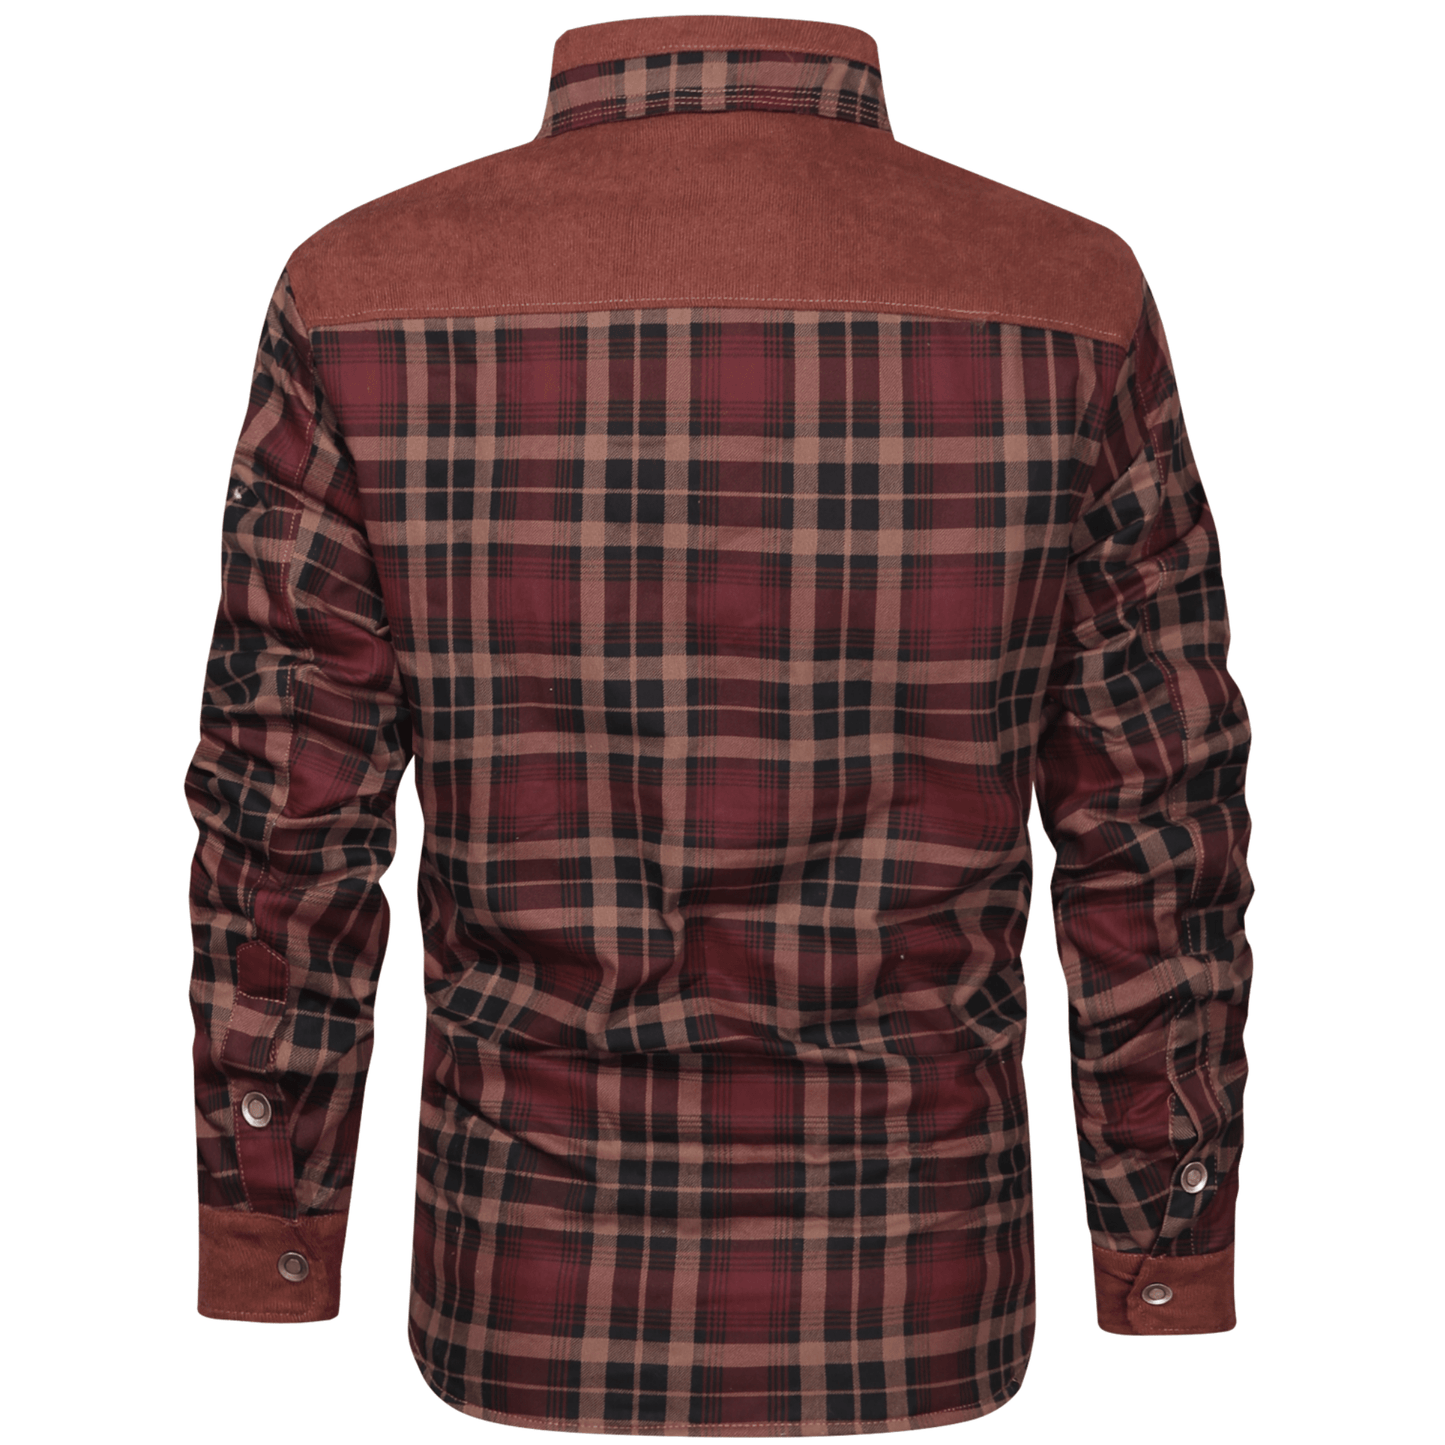 Wanderer Jacket (6 Designs) - Lente Design - Heller Modus